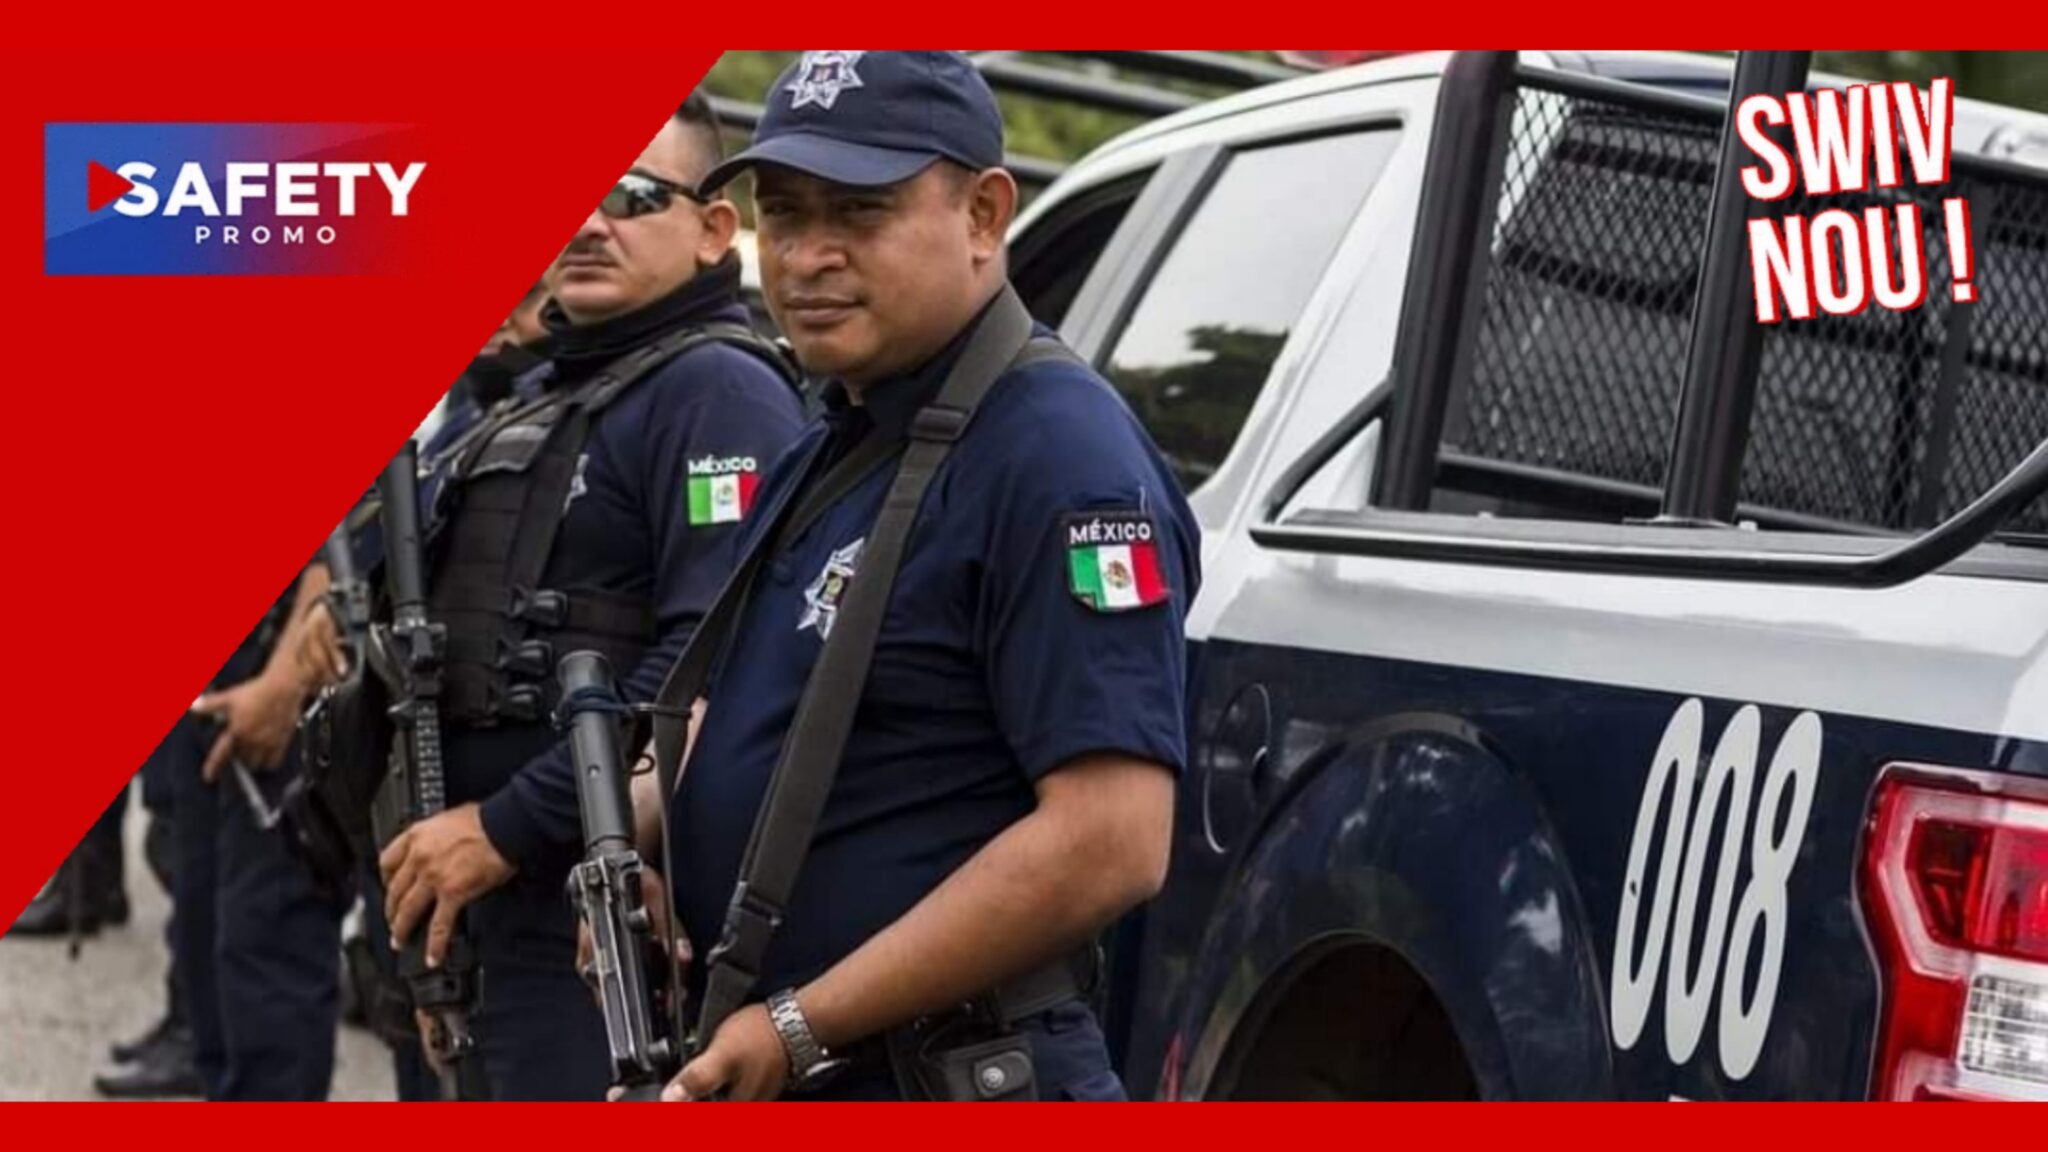 Le nouveau chef de la police de Tijuana reçoit une tête coupée pour son premier jour